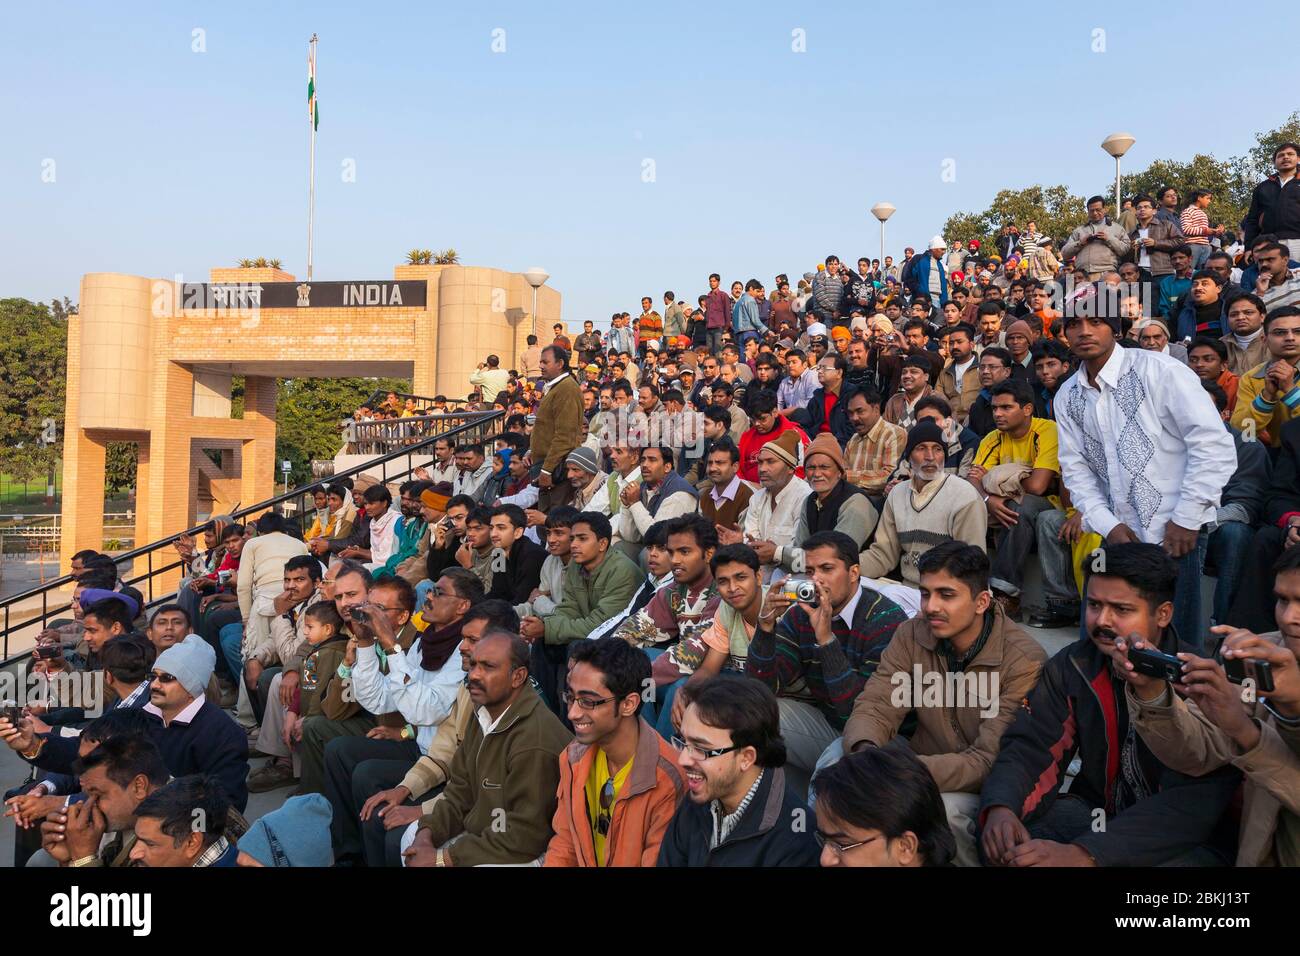 India, Punjab state, Wagah Border post, vicino Atari città, Indo-Pakistan confine, folla irrequieto, atmosfera festosa durante una cerimonia marziale, canzoni patriottiche e applausi Foto Stock